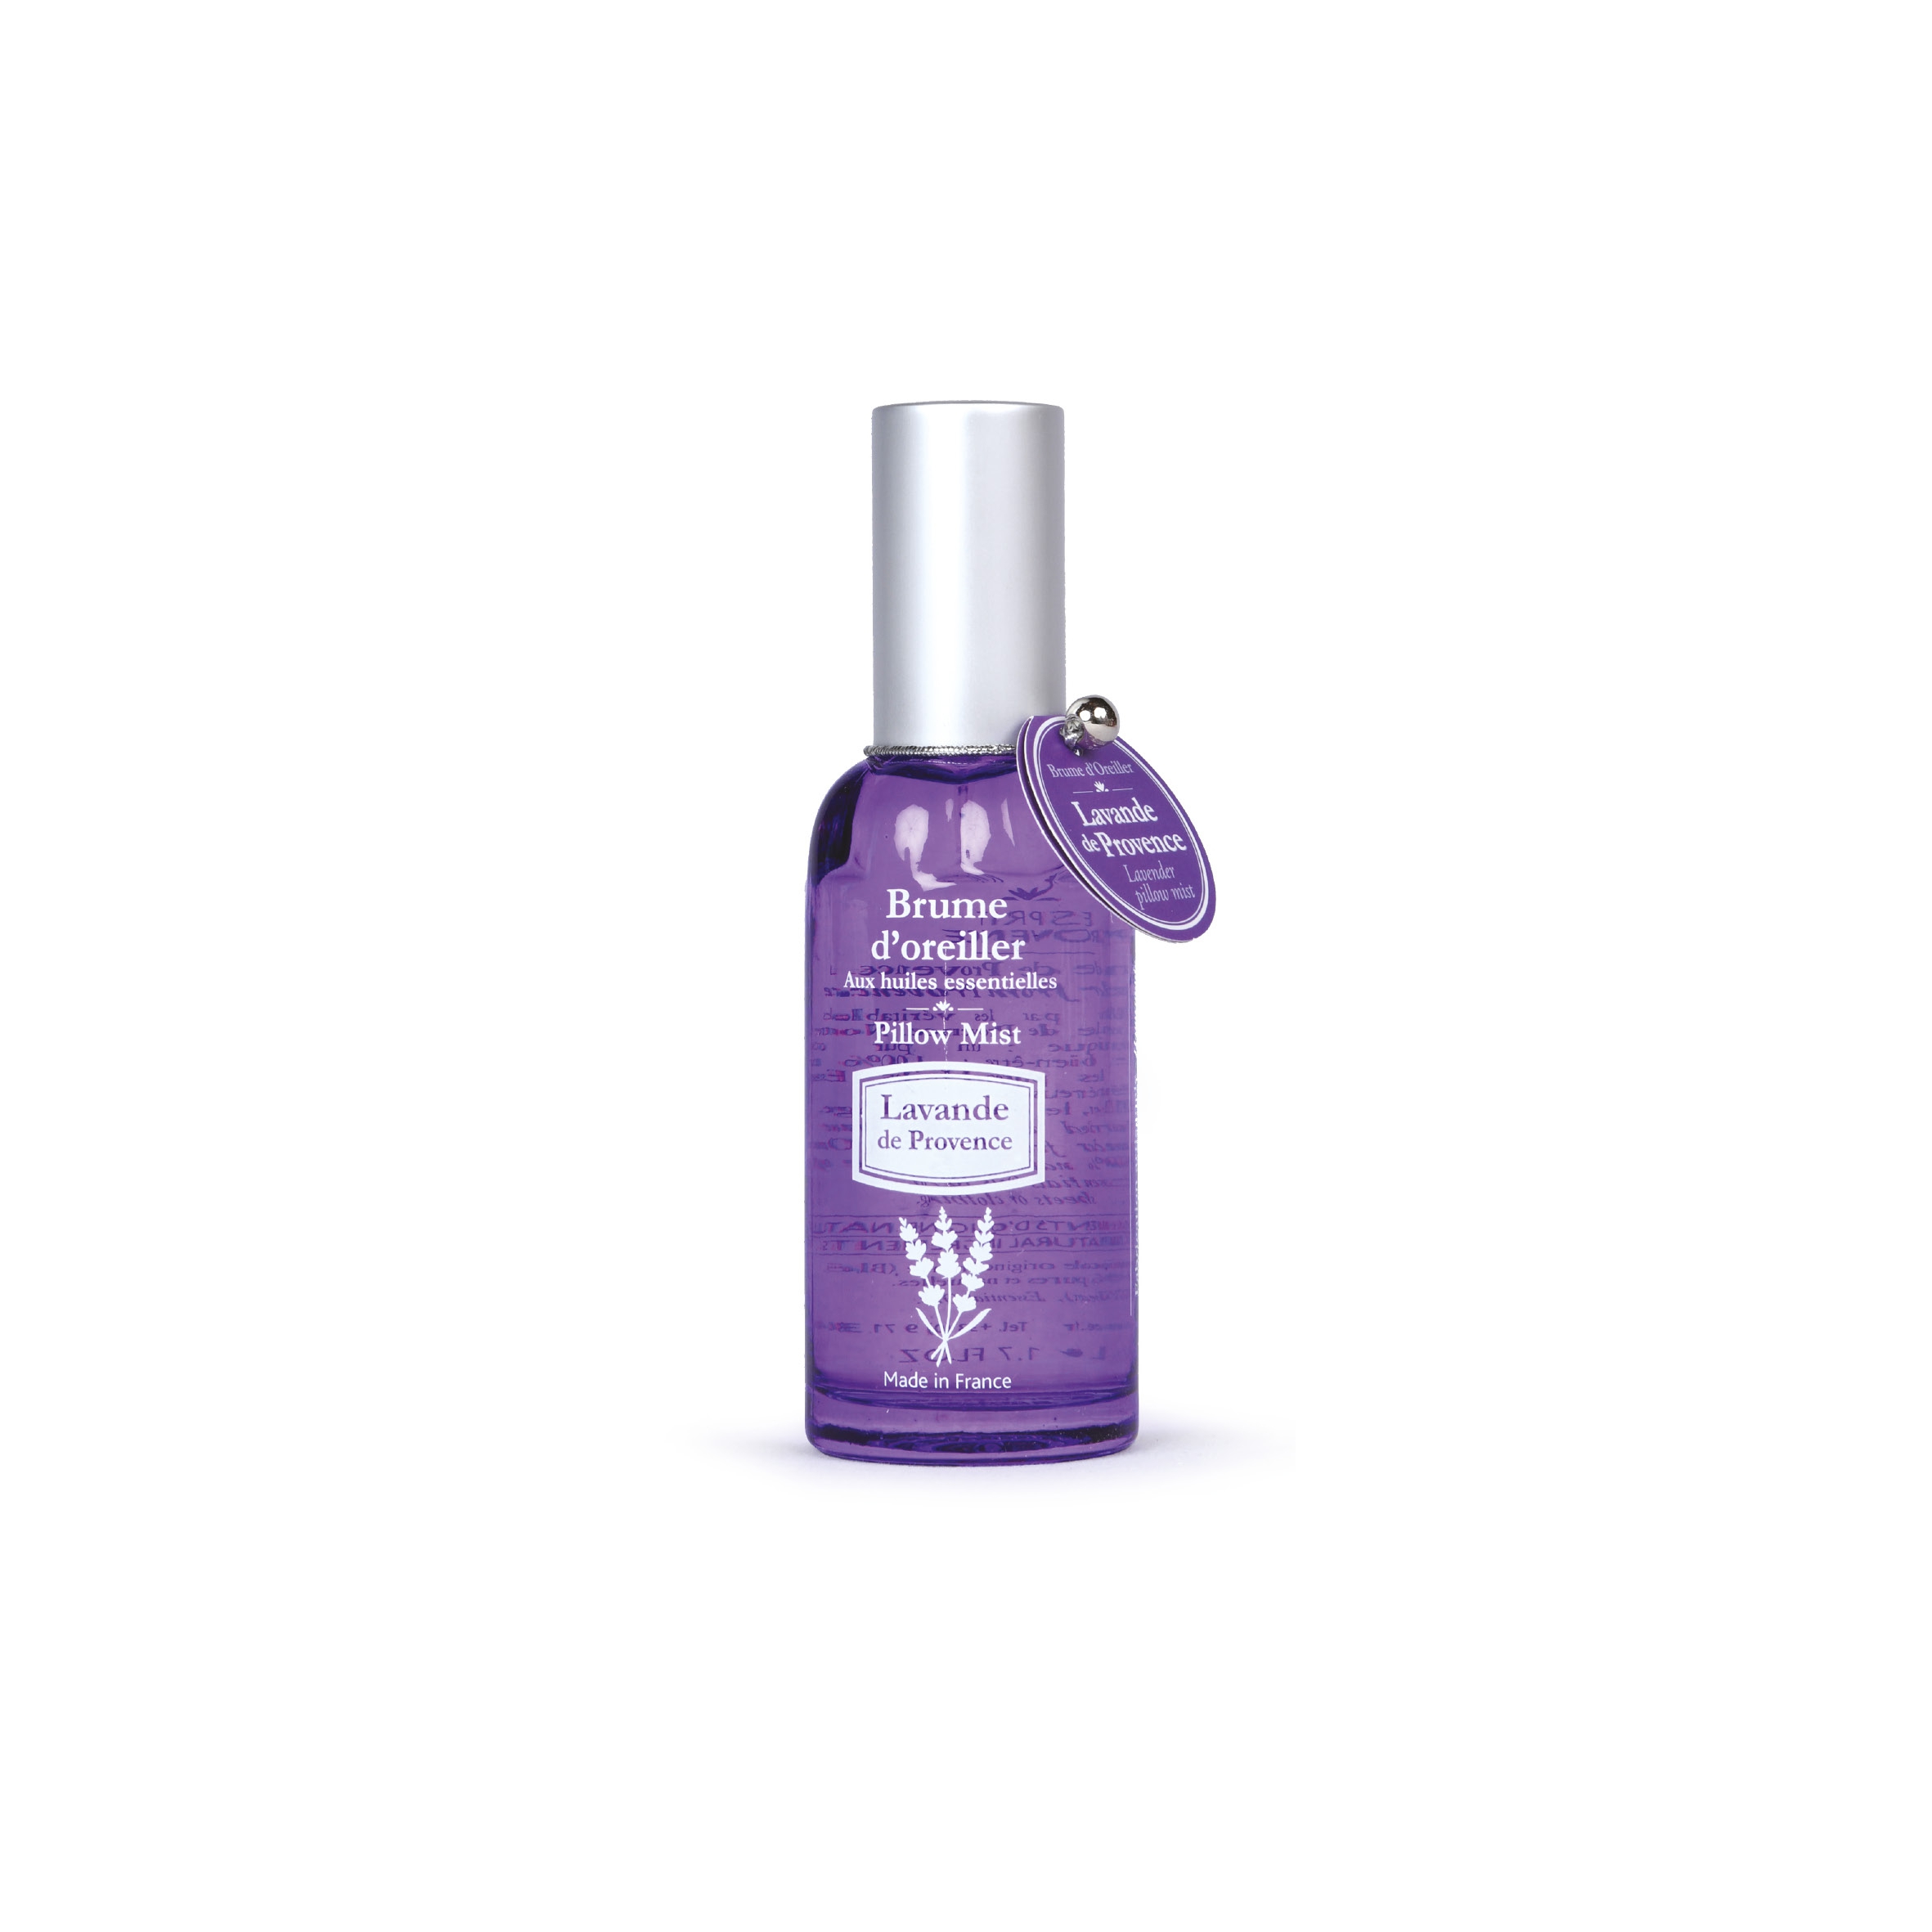 Kopfkissenspray Lavendel Provence mit ätherischen Ölen – 50 ml